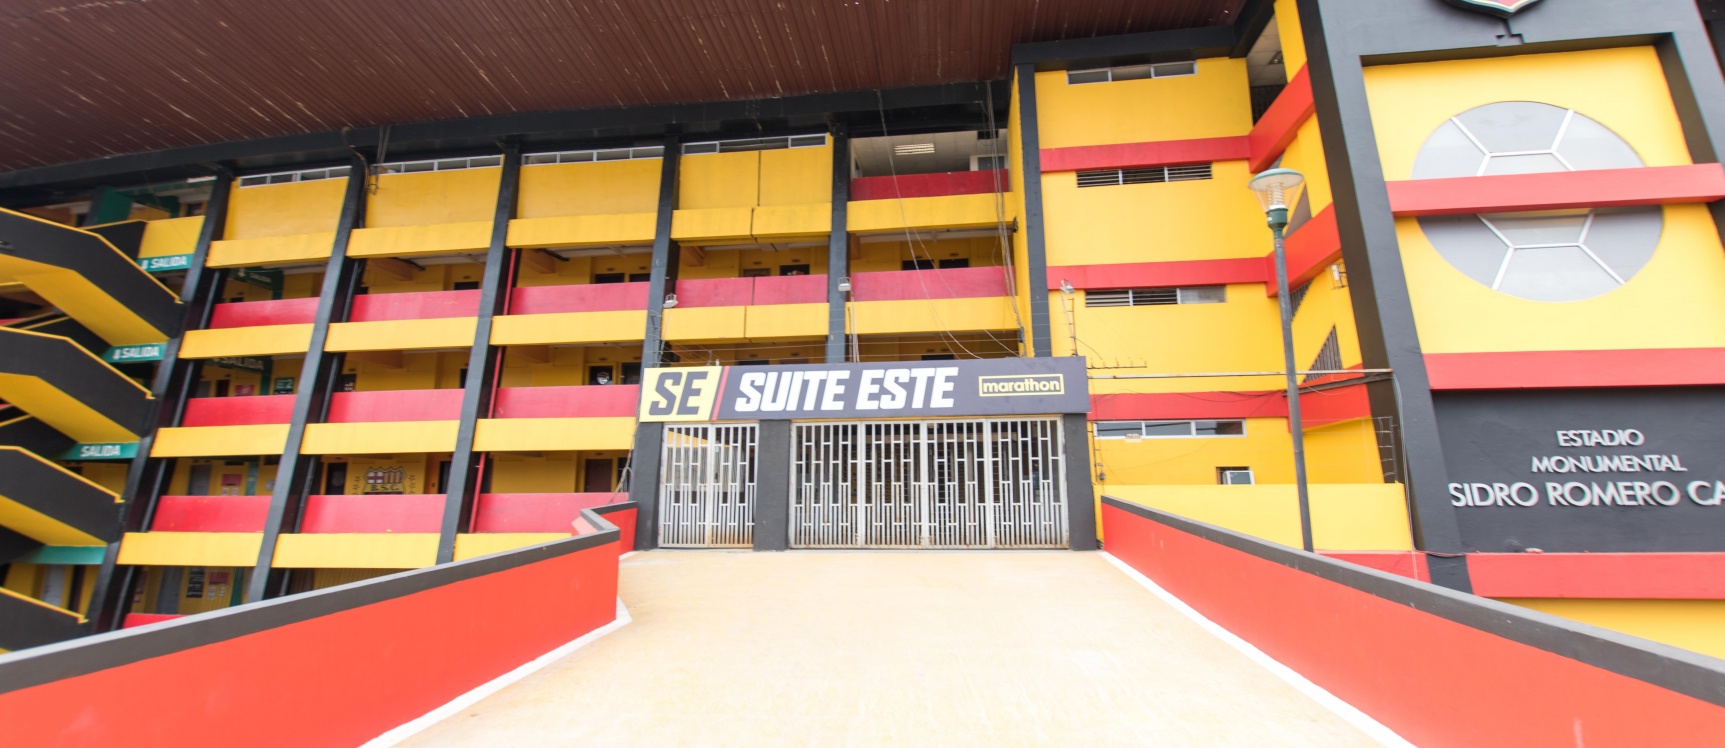 GeoBienes - Suite en alquiler ubicado en el Estadio Monumental - Plusvalia Guayaquil Casas de venta y alquiler Inmobiliaria Ecuador